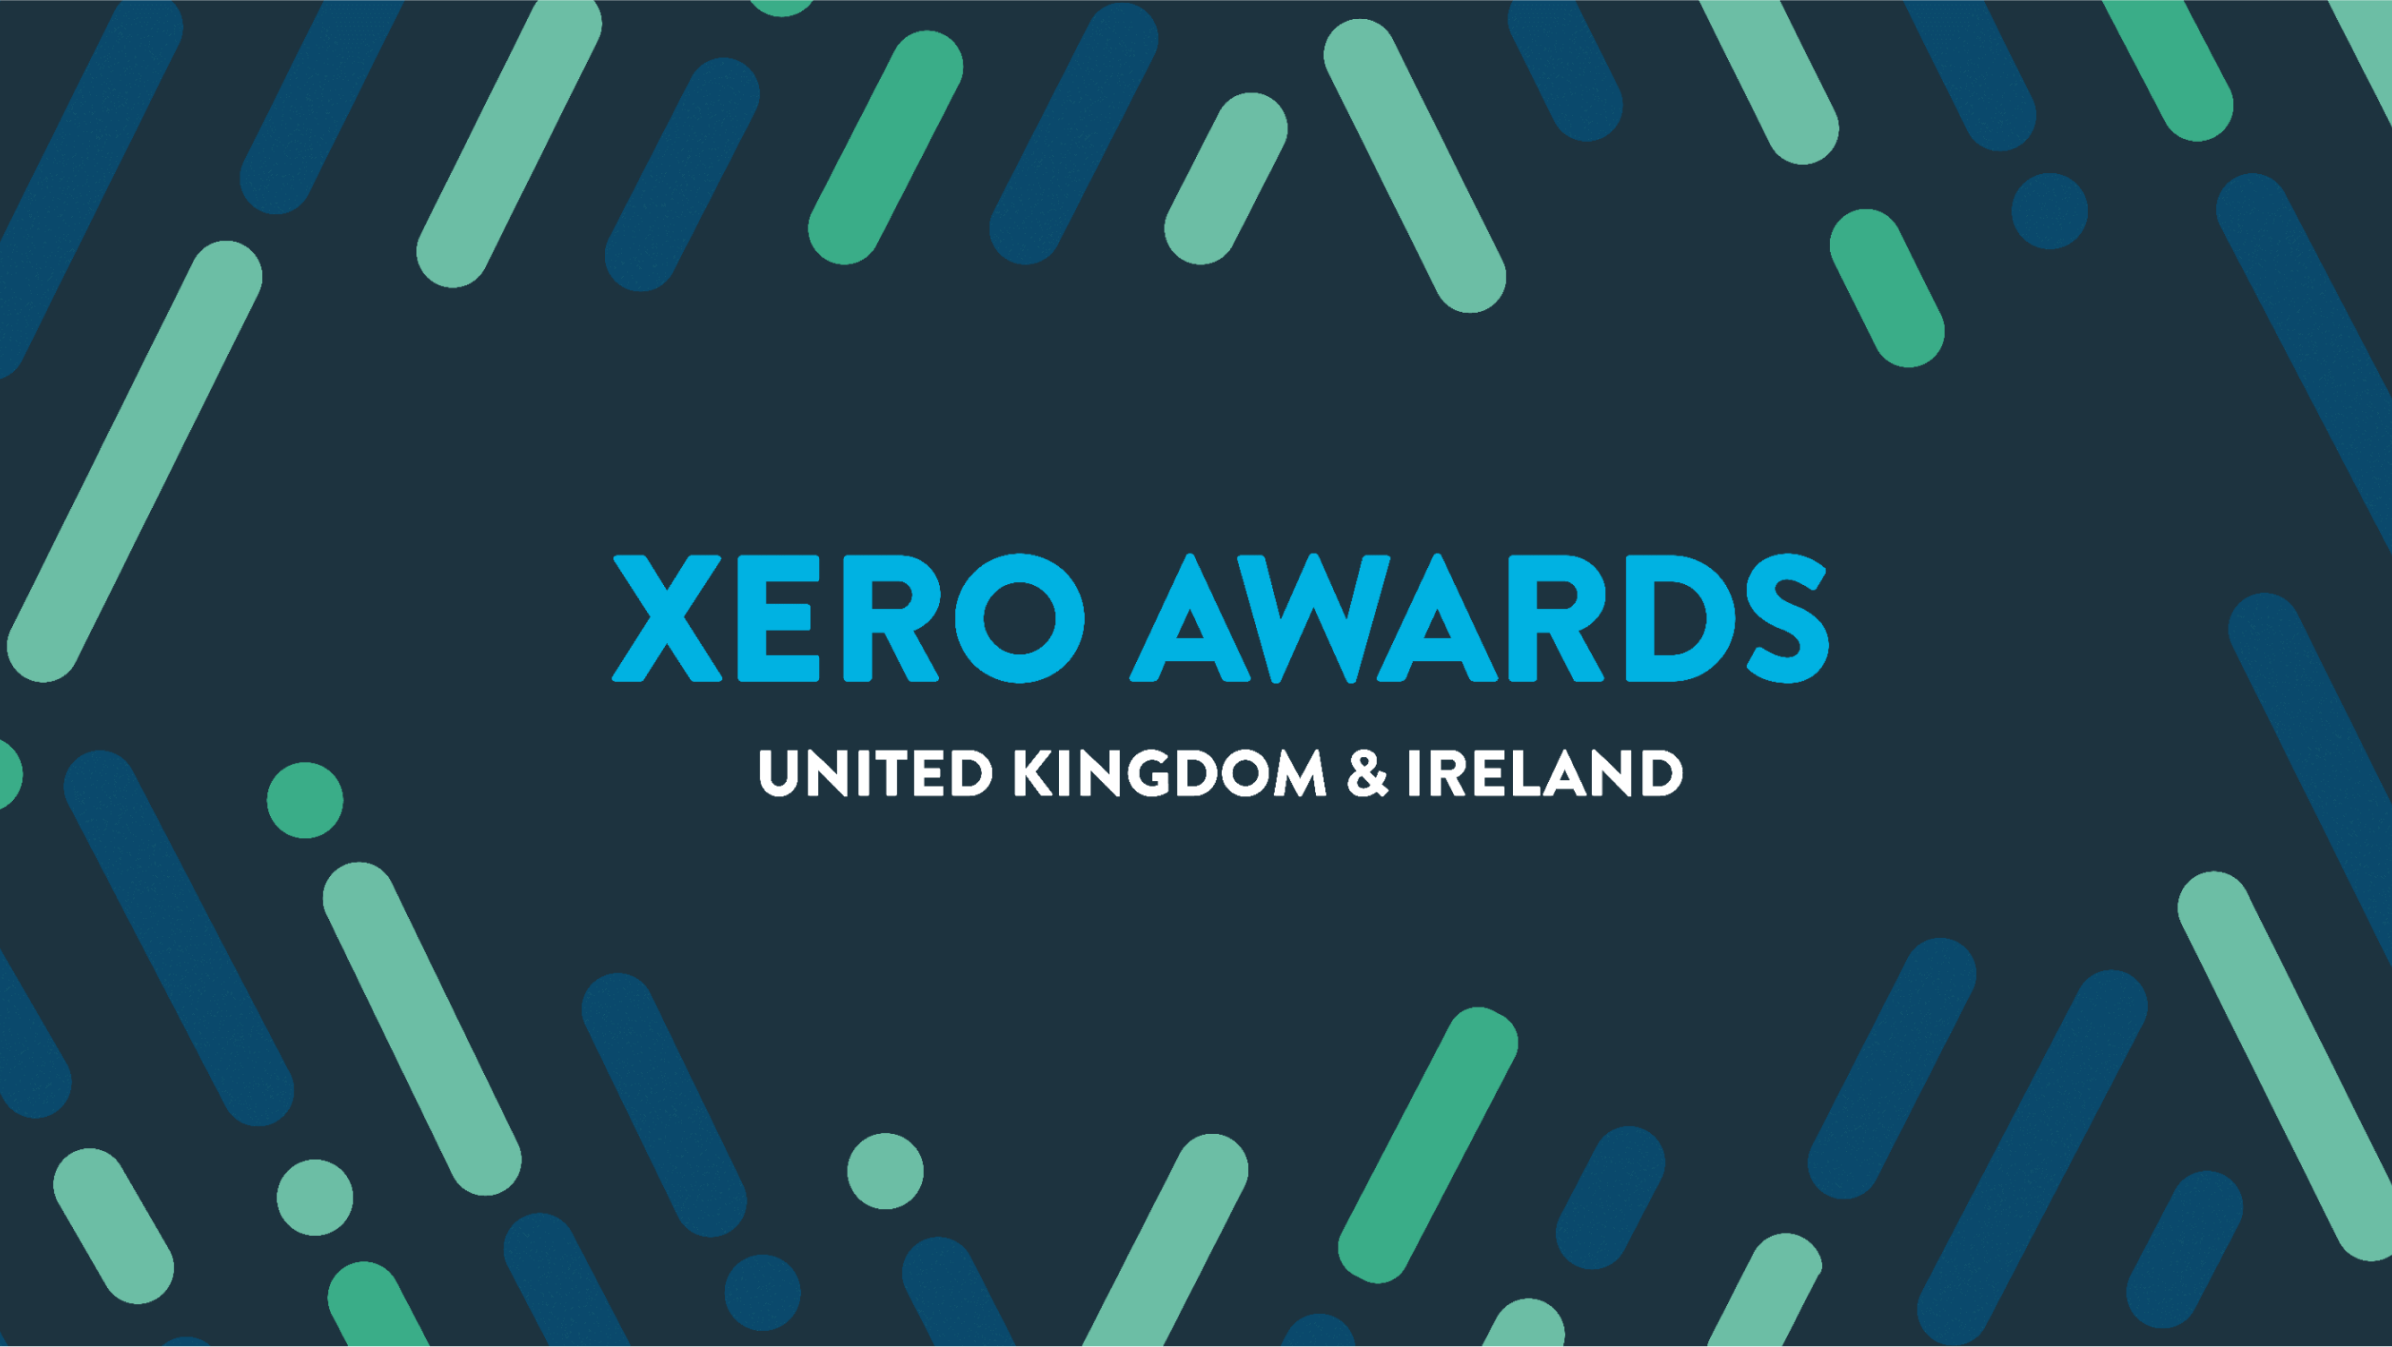 Xero Awards United Kingdom & Ireland header